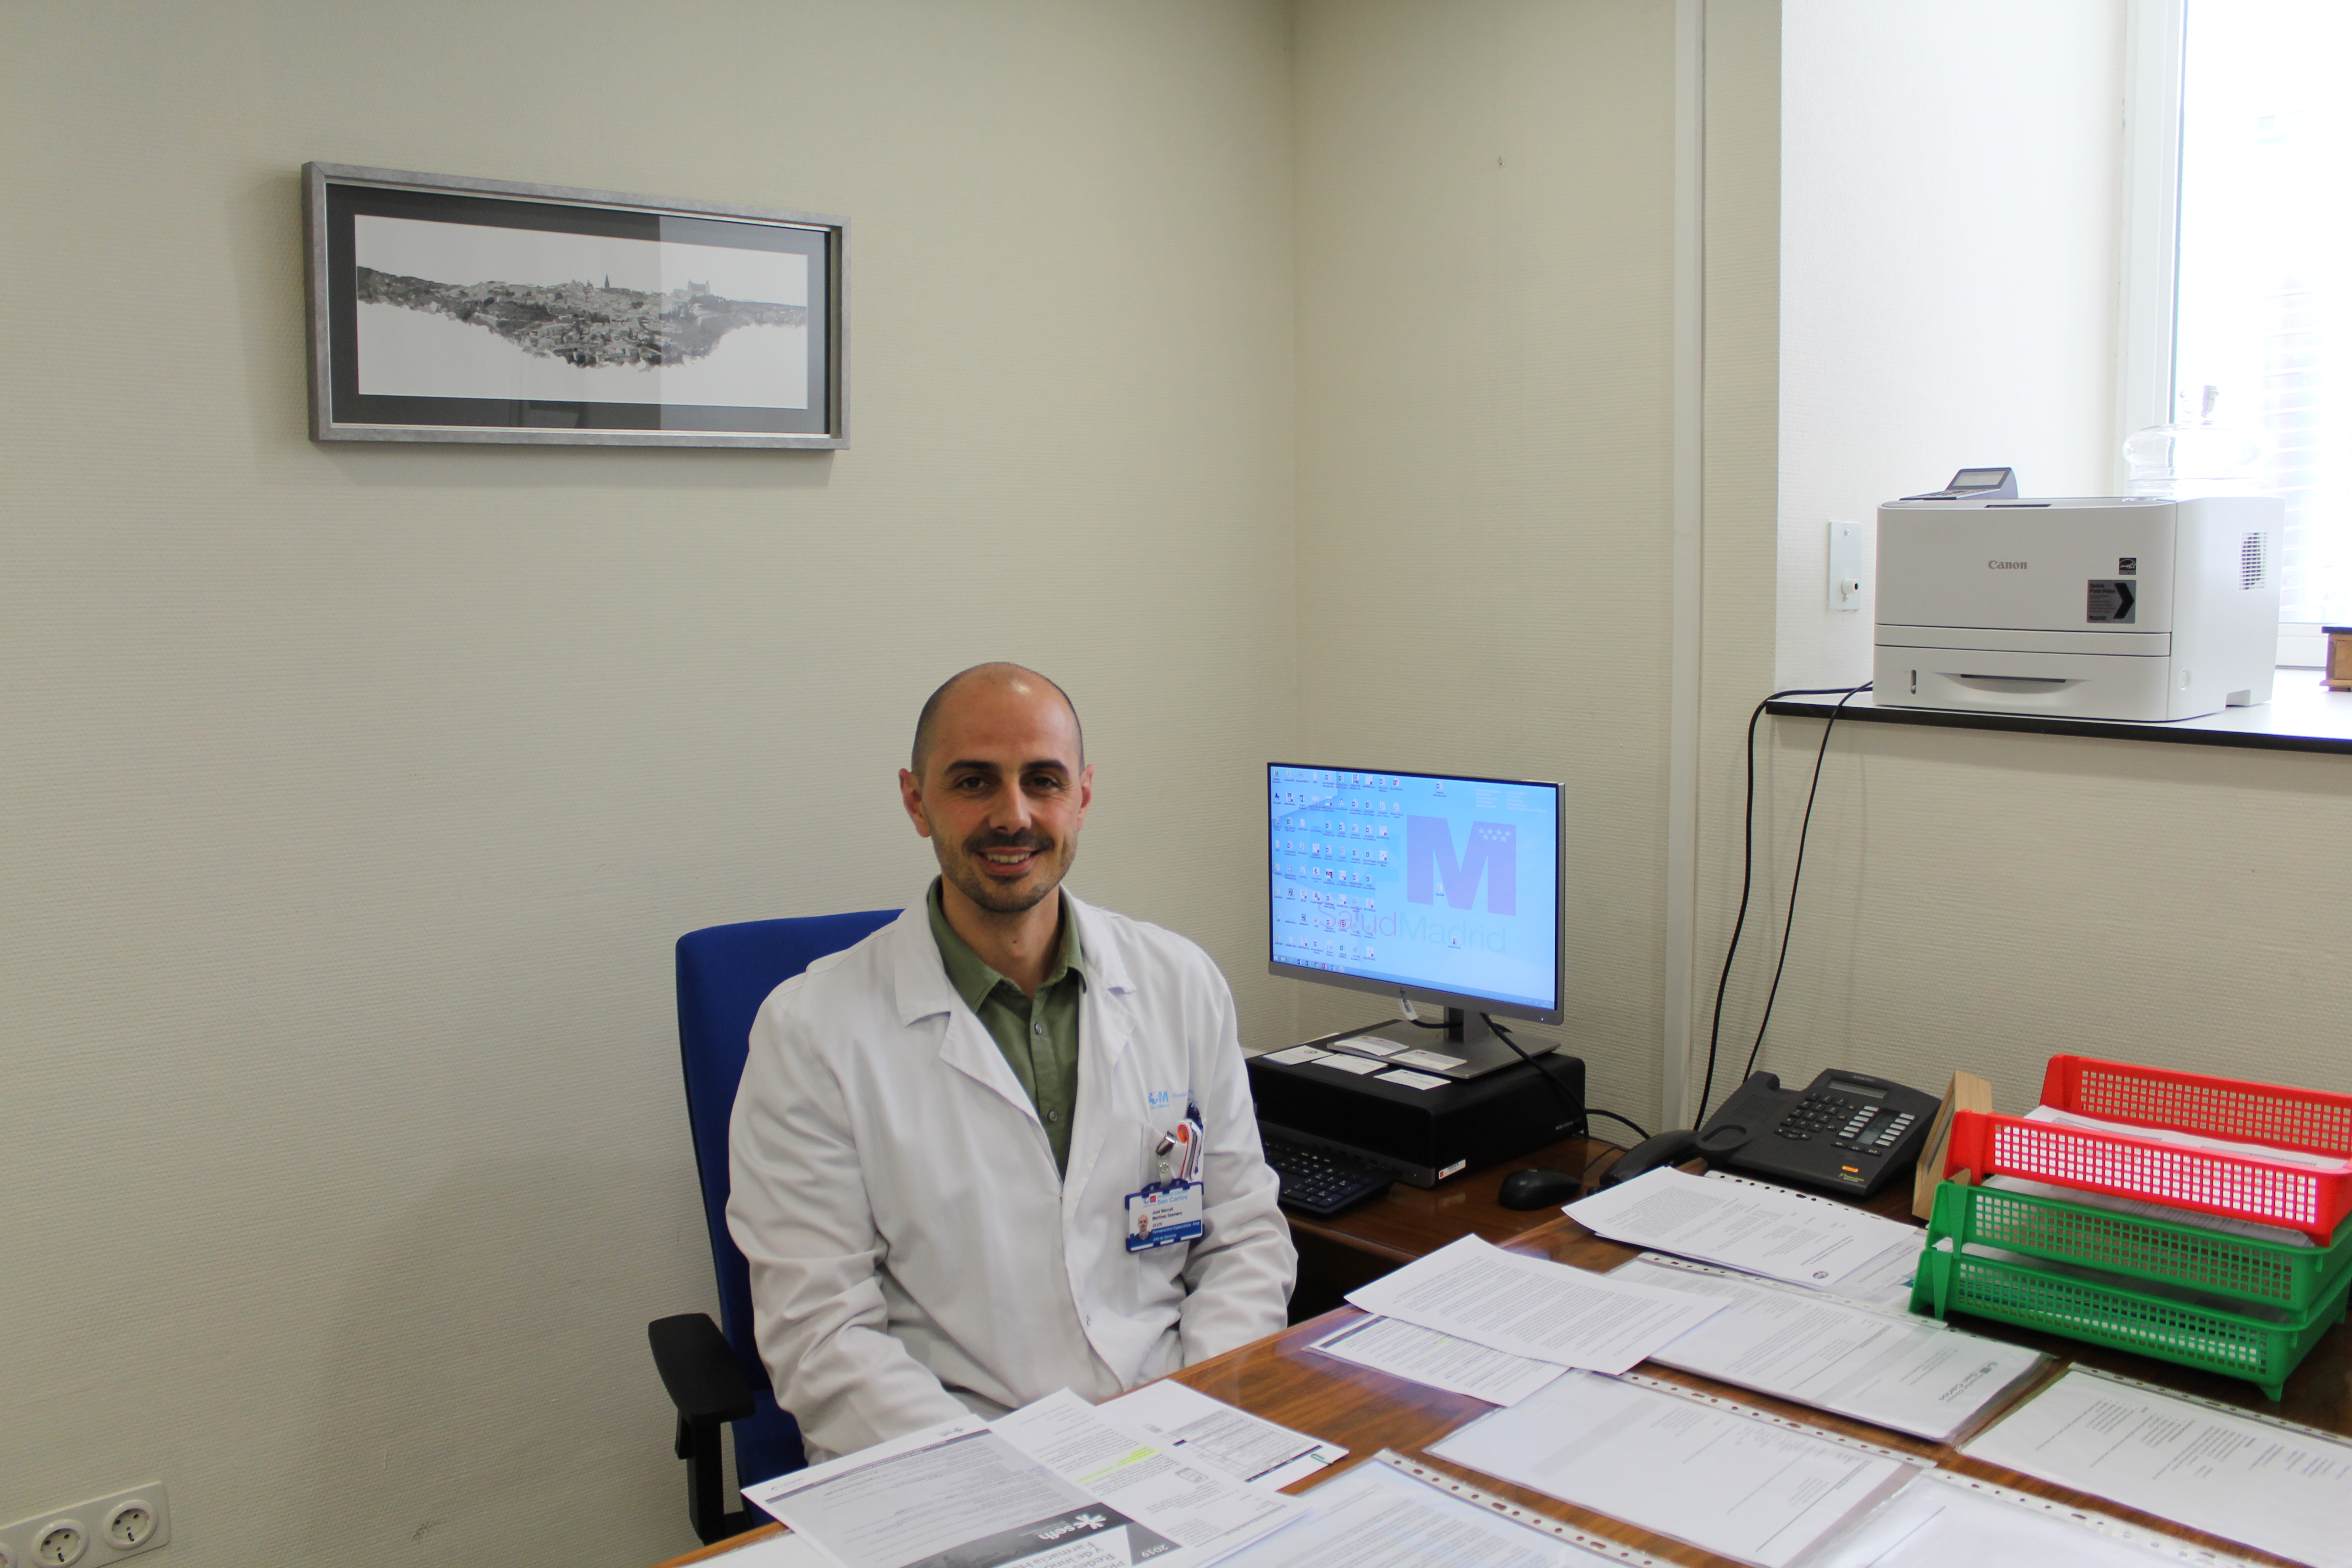 Entrevista José Manuel Martínez Sesmero, Jefe del Servicio de Farmacia del Hospital Clínico San Carlos